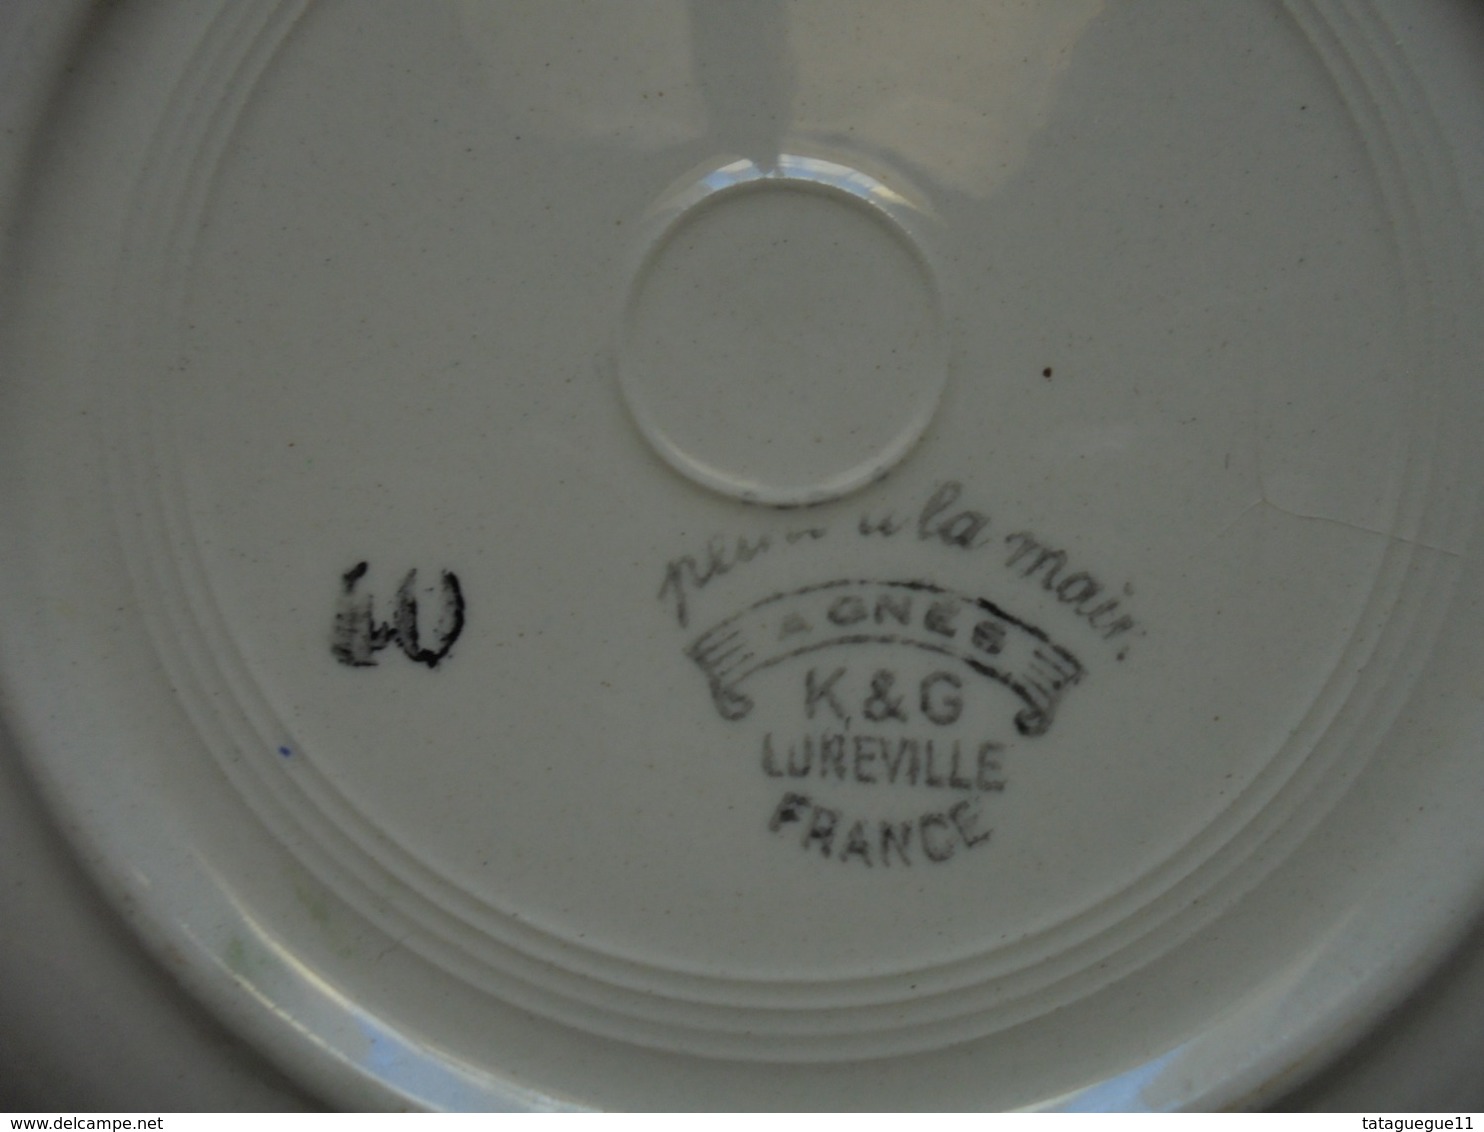 Ancien - 2 assiettes creuses K&G LUNEVILLE - FRANCE - "Agnes" peint à la main